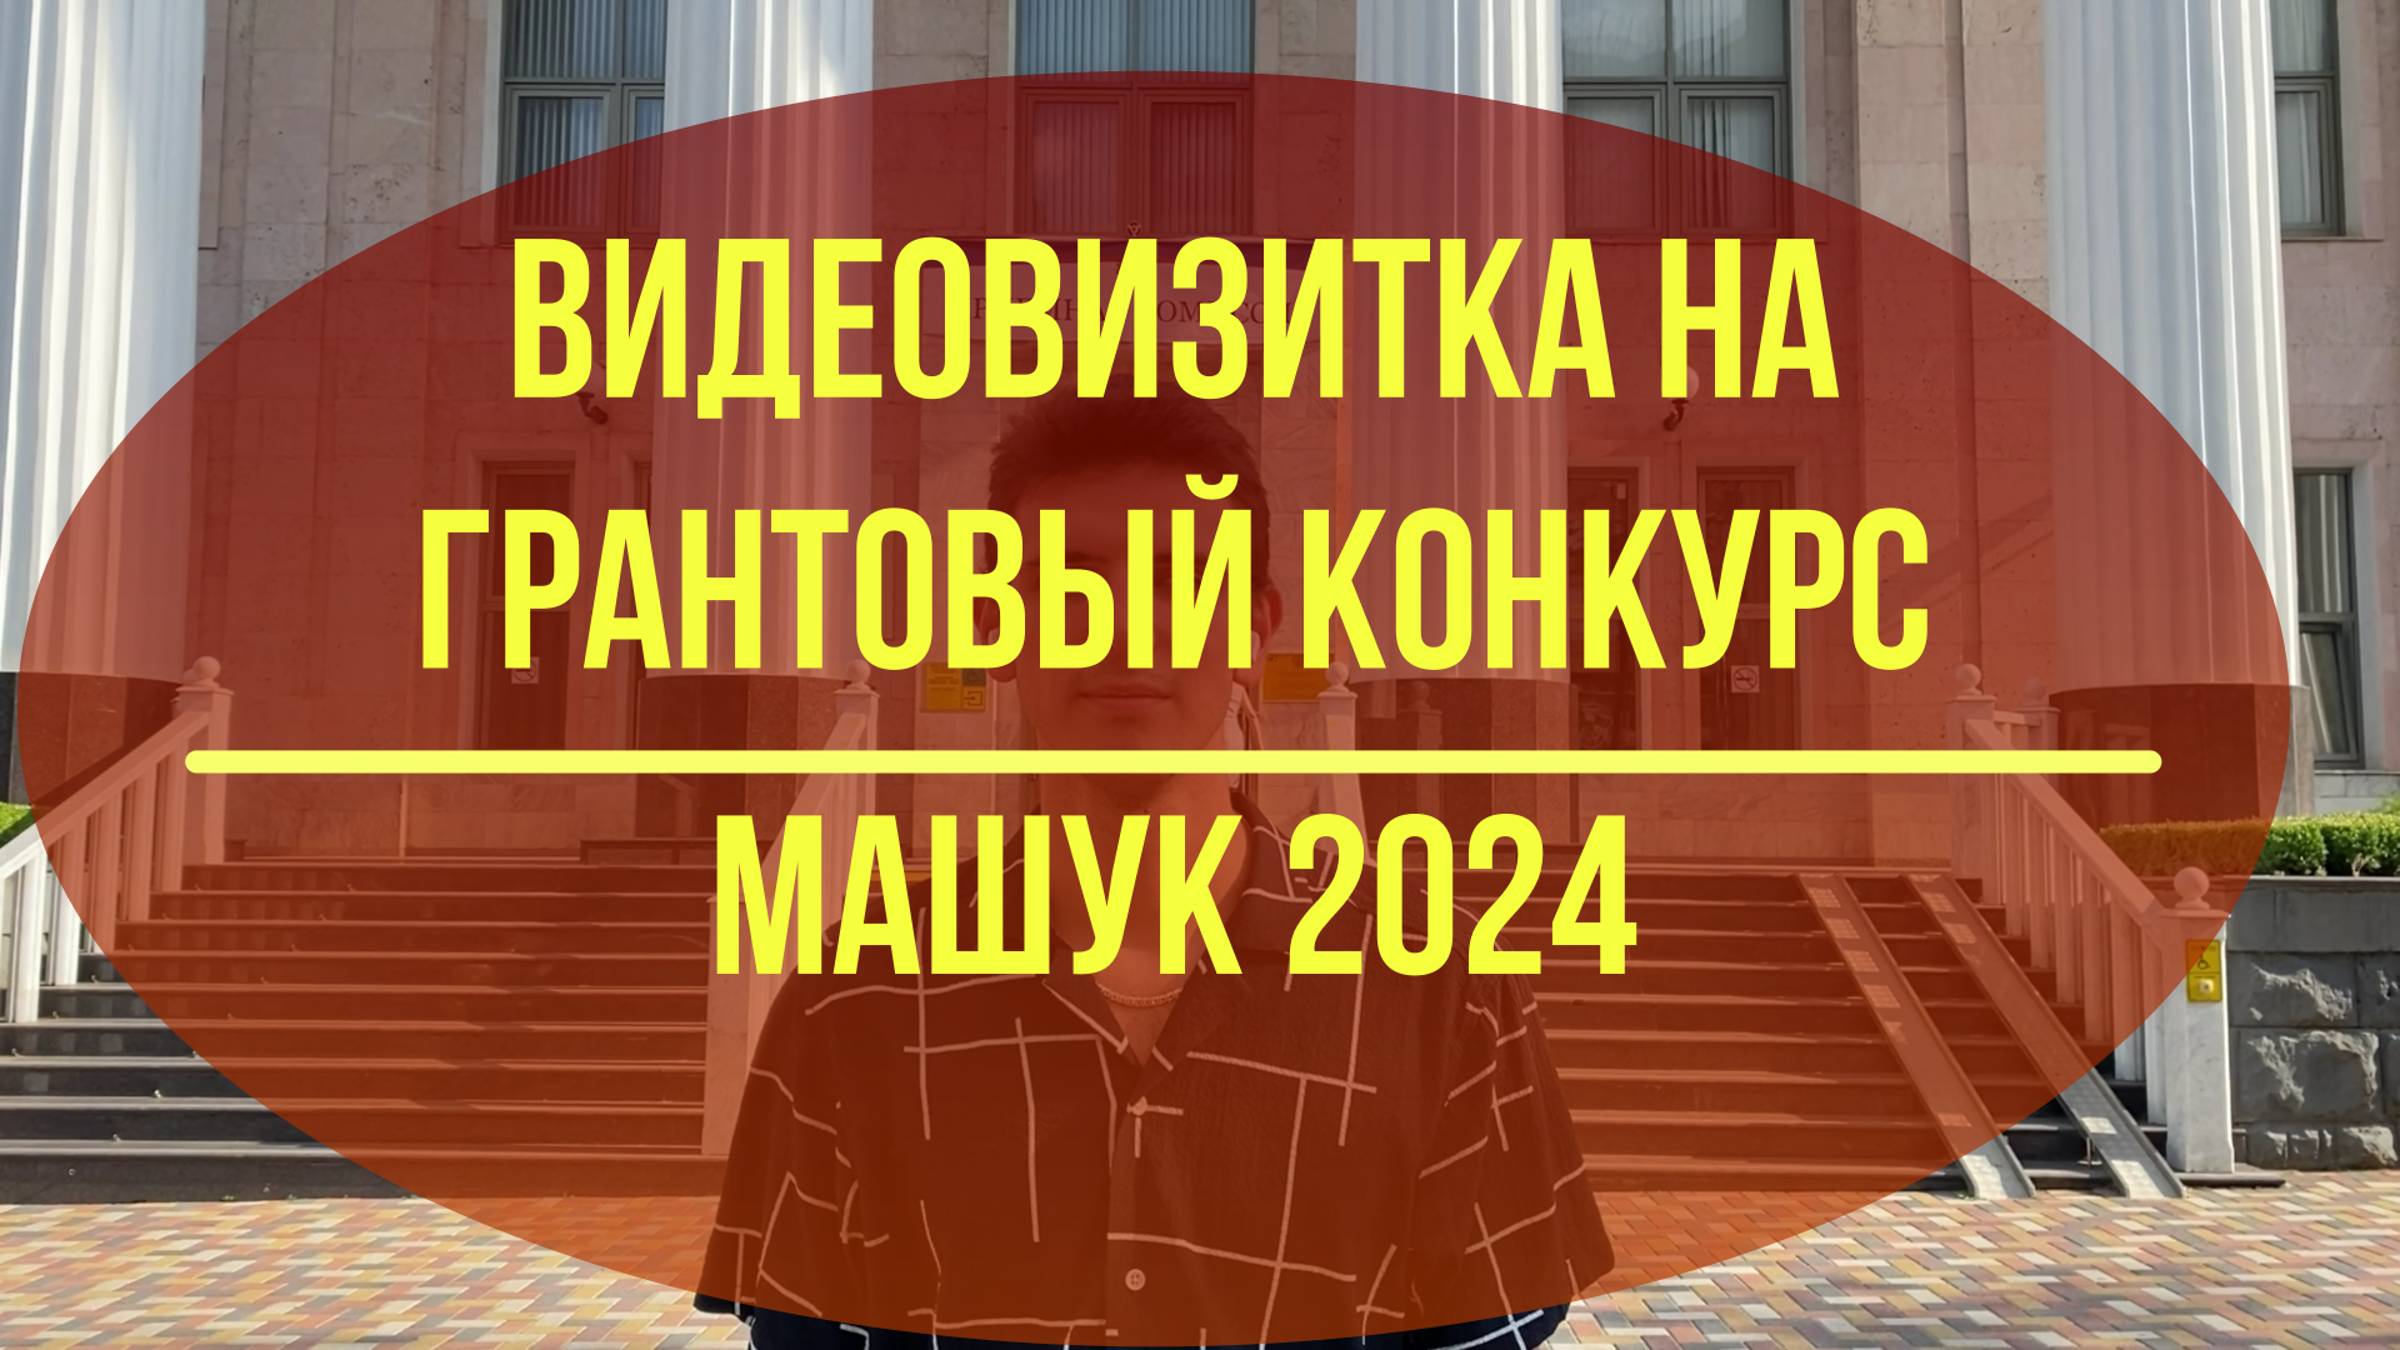 Видеовизитка на грантовый конкурс форума "Машук 2024"